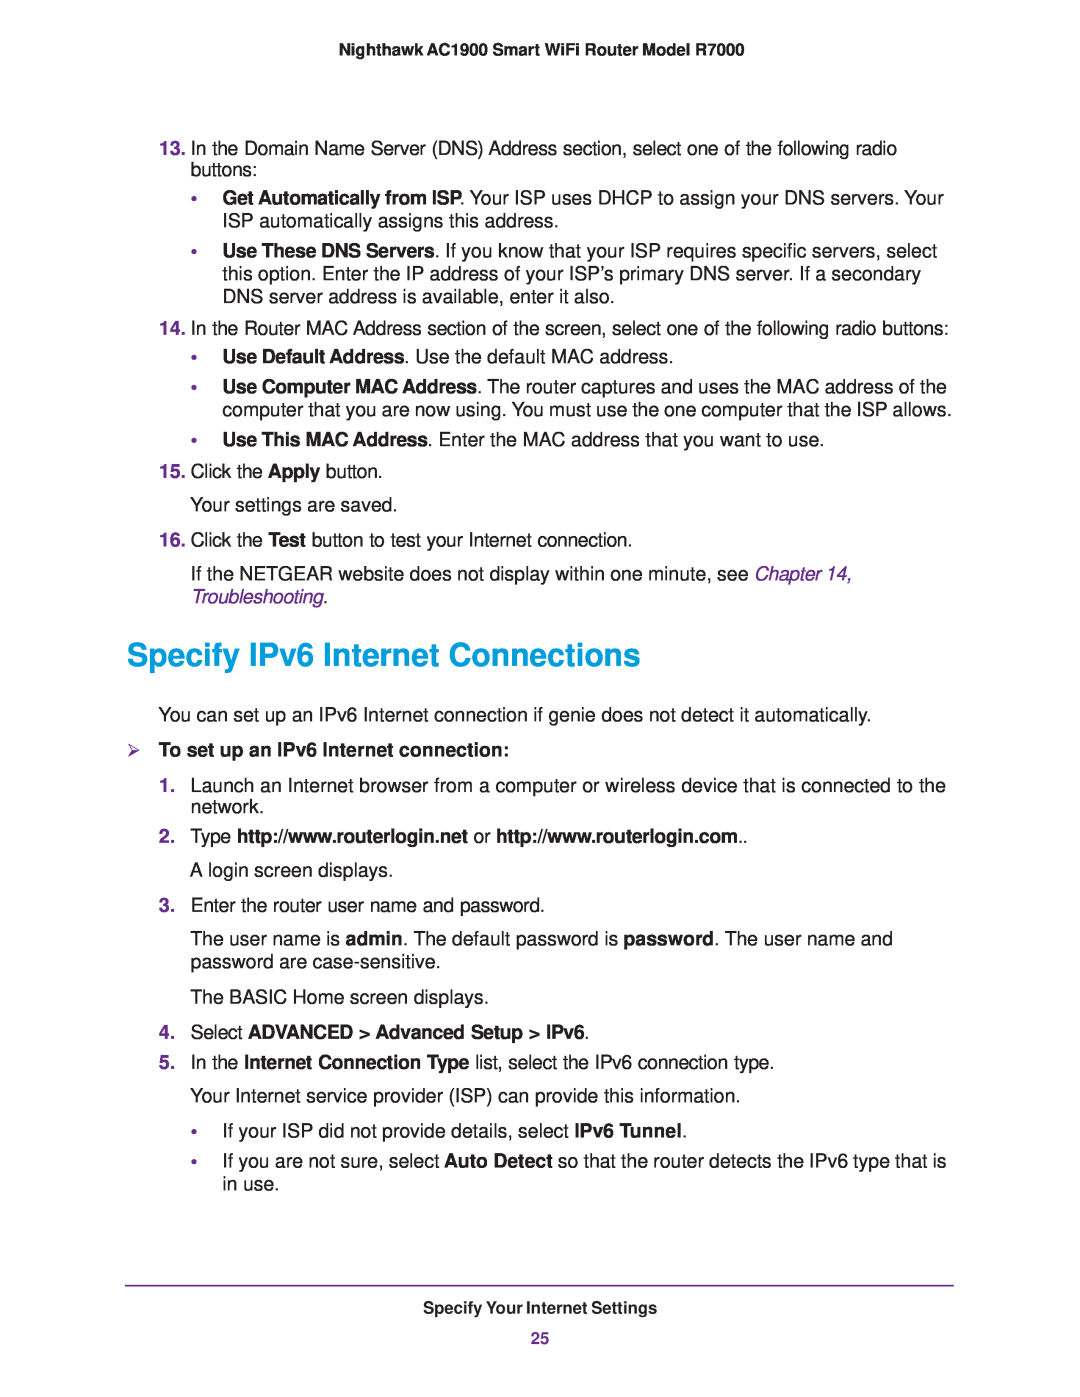 NETGEAR R7000 user manual Specify IPv6 Internet Connections,  To set up an IPv6 Internet connection 